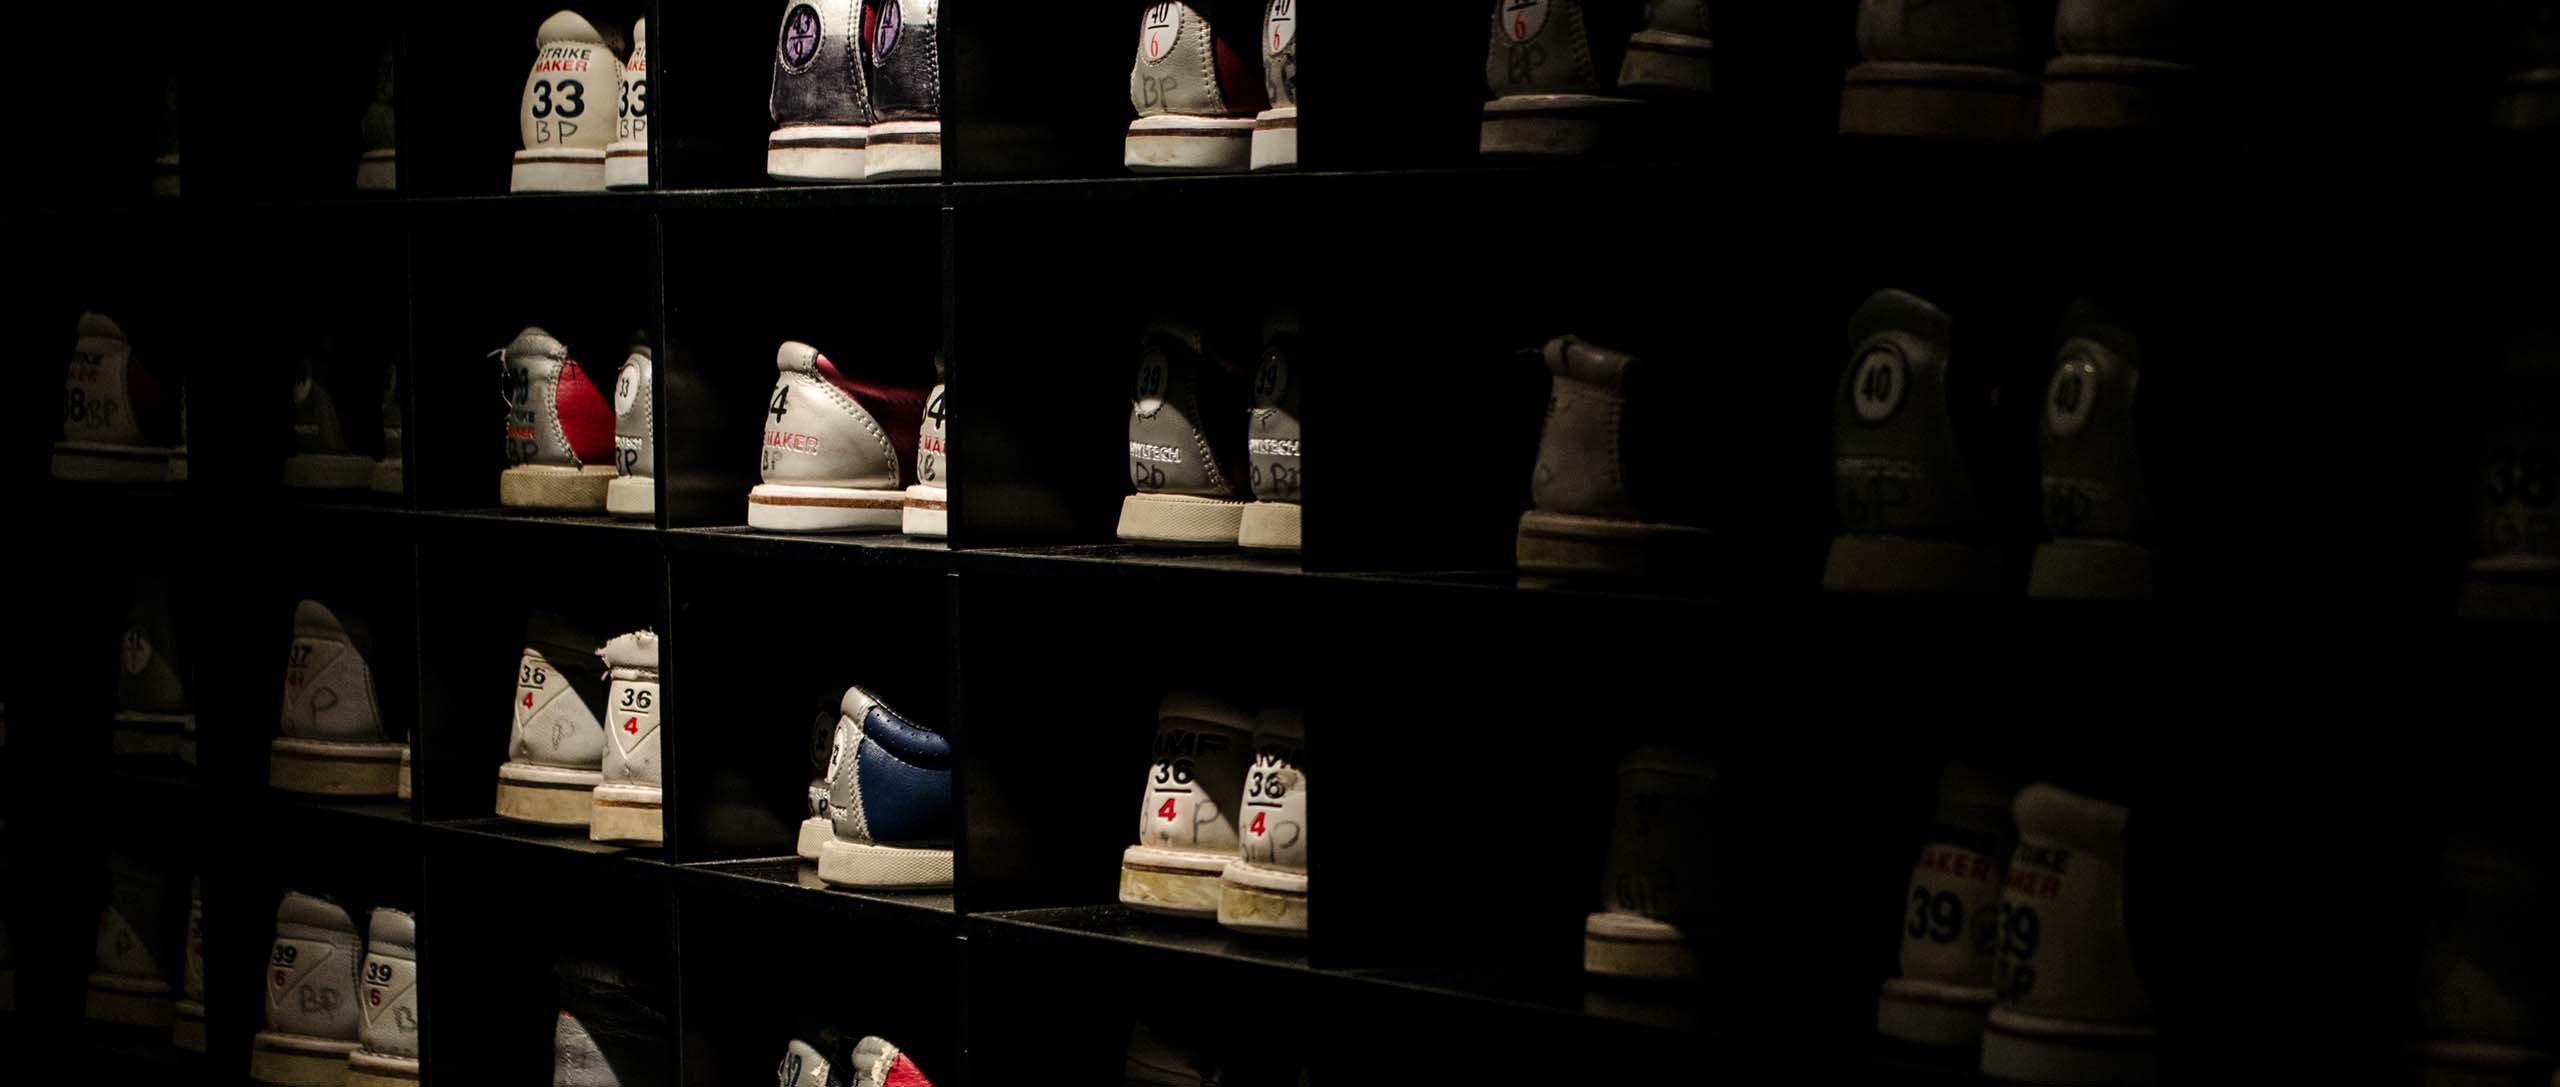 Clarco shoes shelf